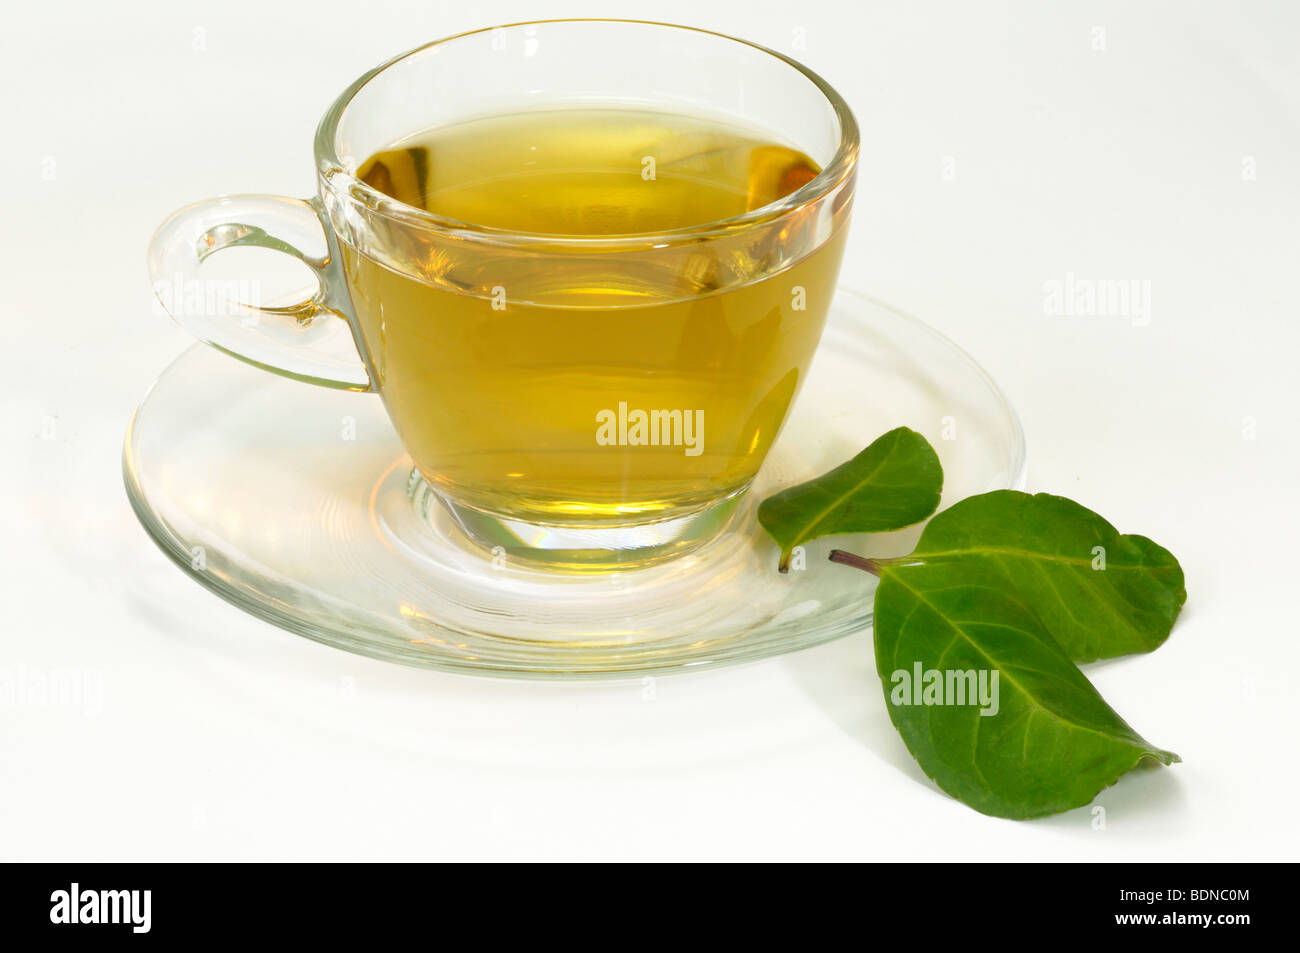 Mate, Té de Paraguay (Ilex paraguariensis). Una taza de té con tres hojas,  studio picture Fotografía de stock - Alamy